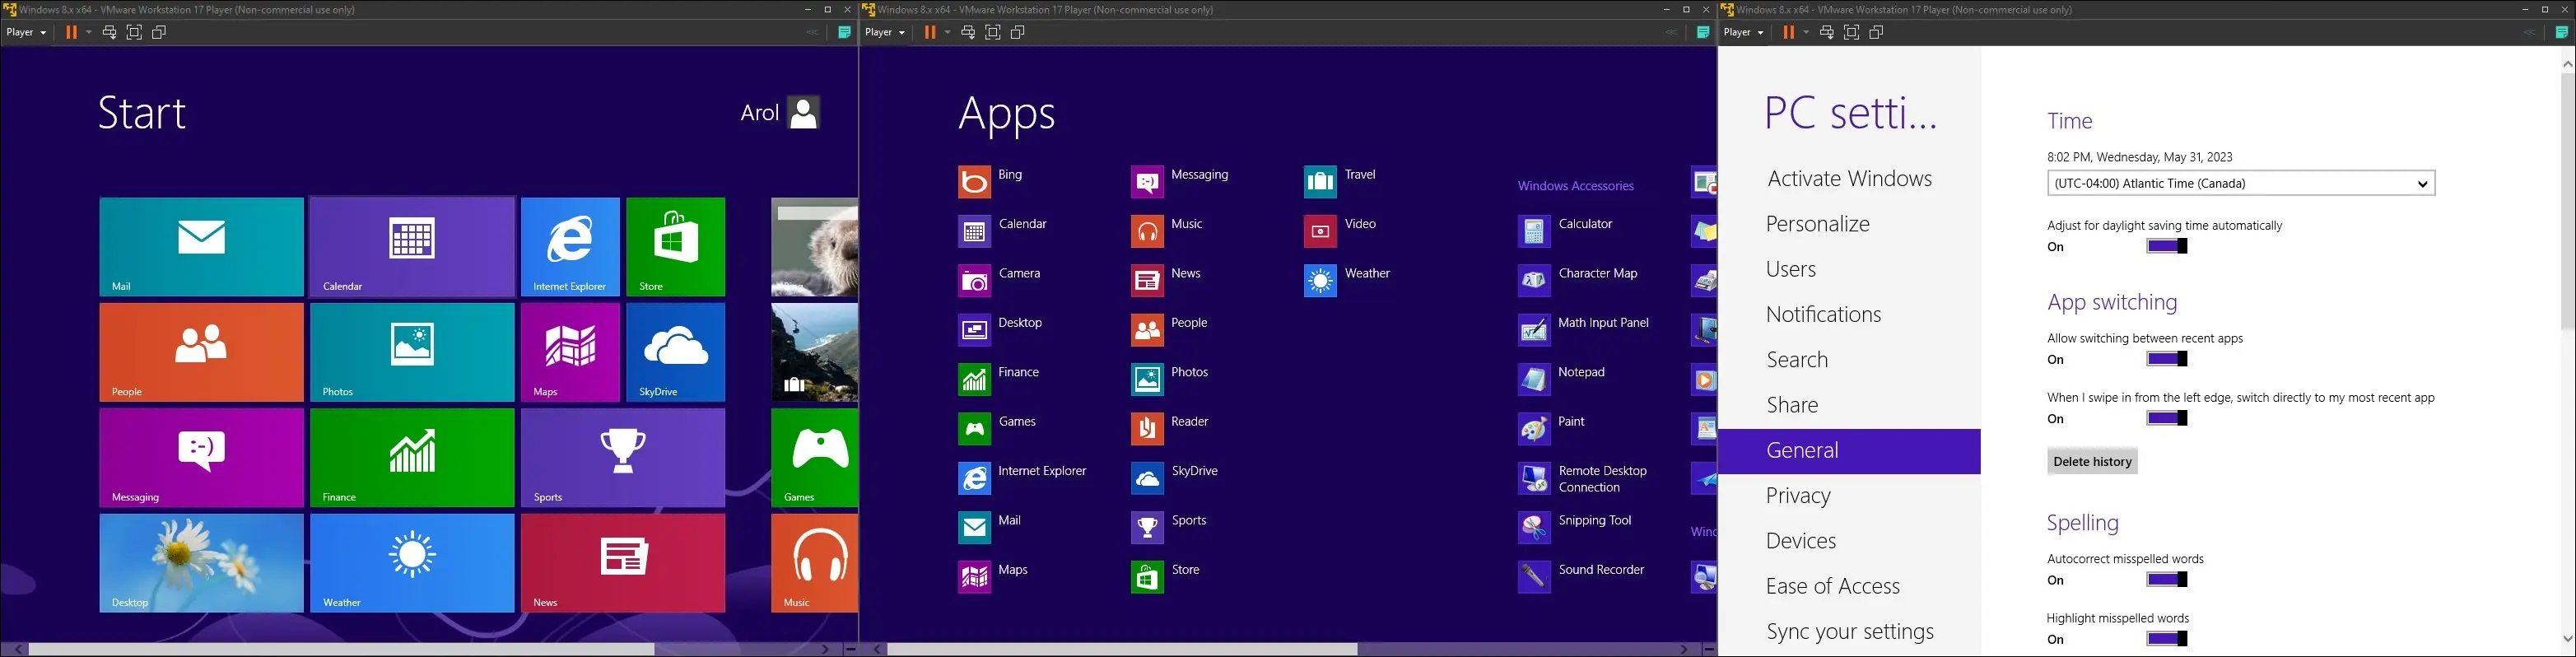 obrazy systemu Windows 8 na maszynie wirtualnej, przedstawiające menu Start, menu wszystkich aplikacji i aplikację ustawień